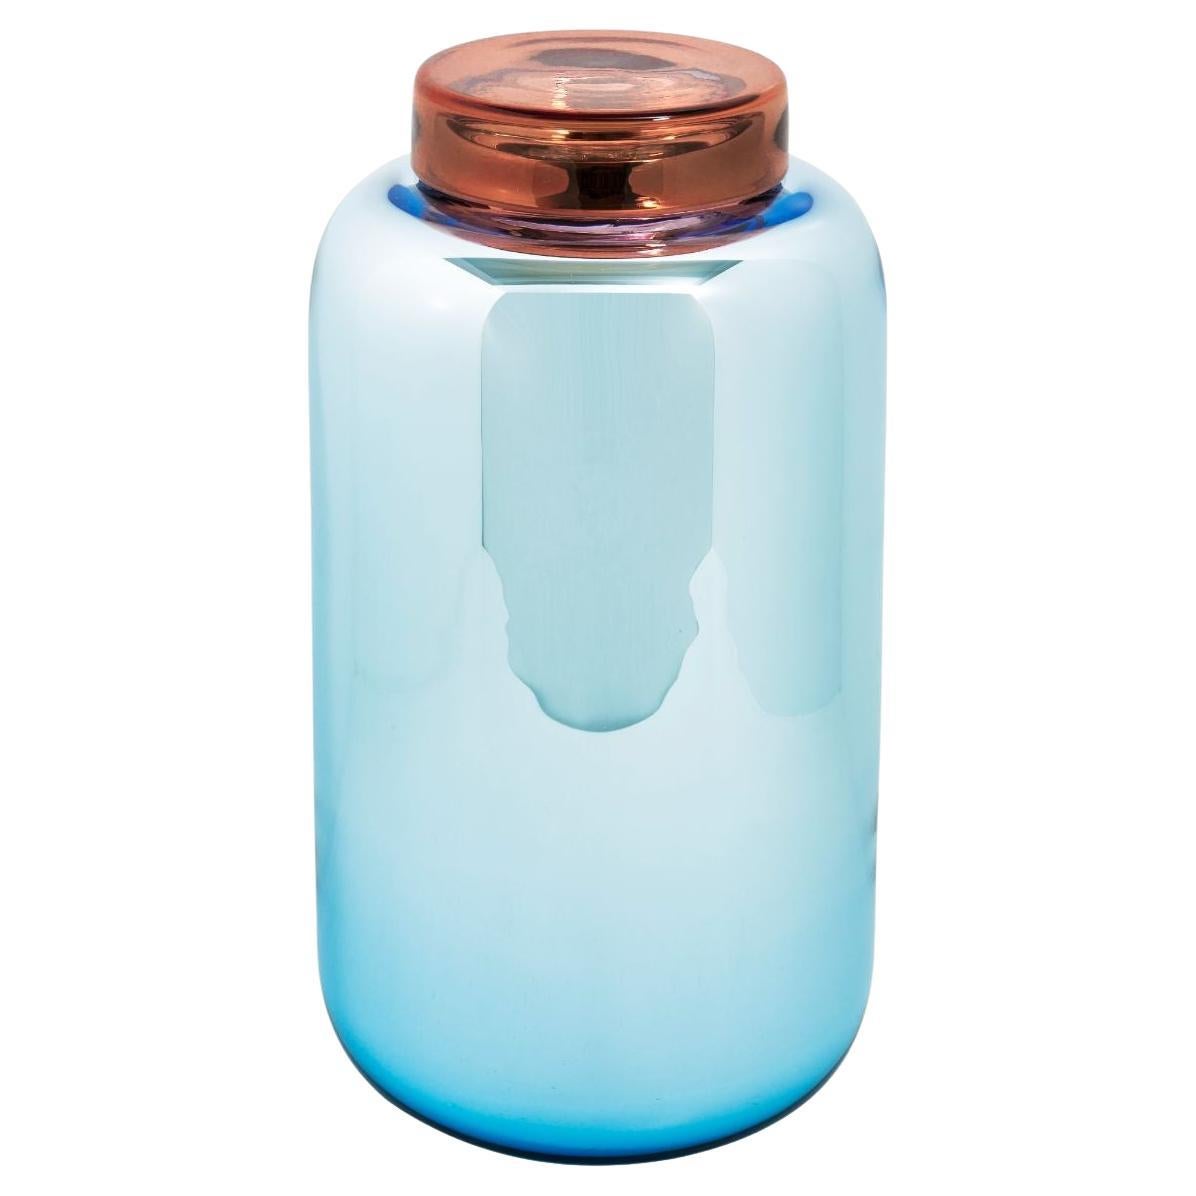 Vase et boîte en forme de conteneur bleu clair et rouge par Pulpo